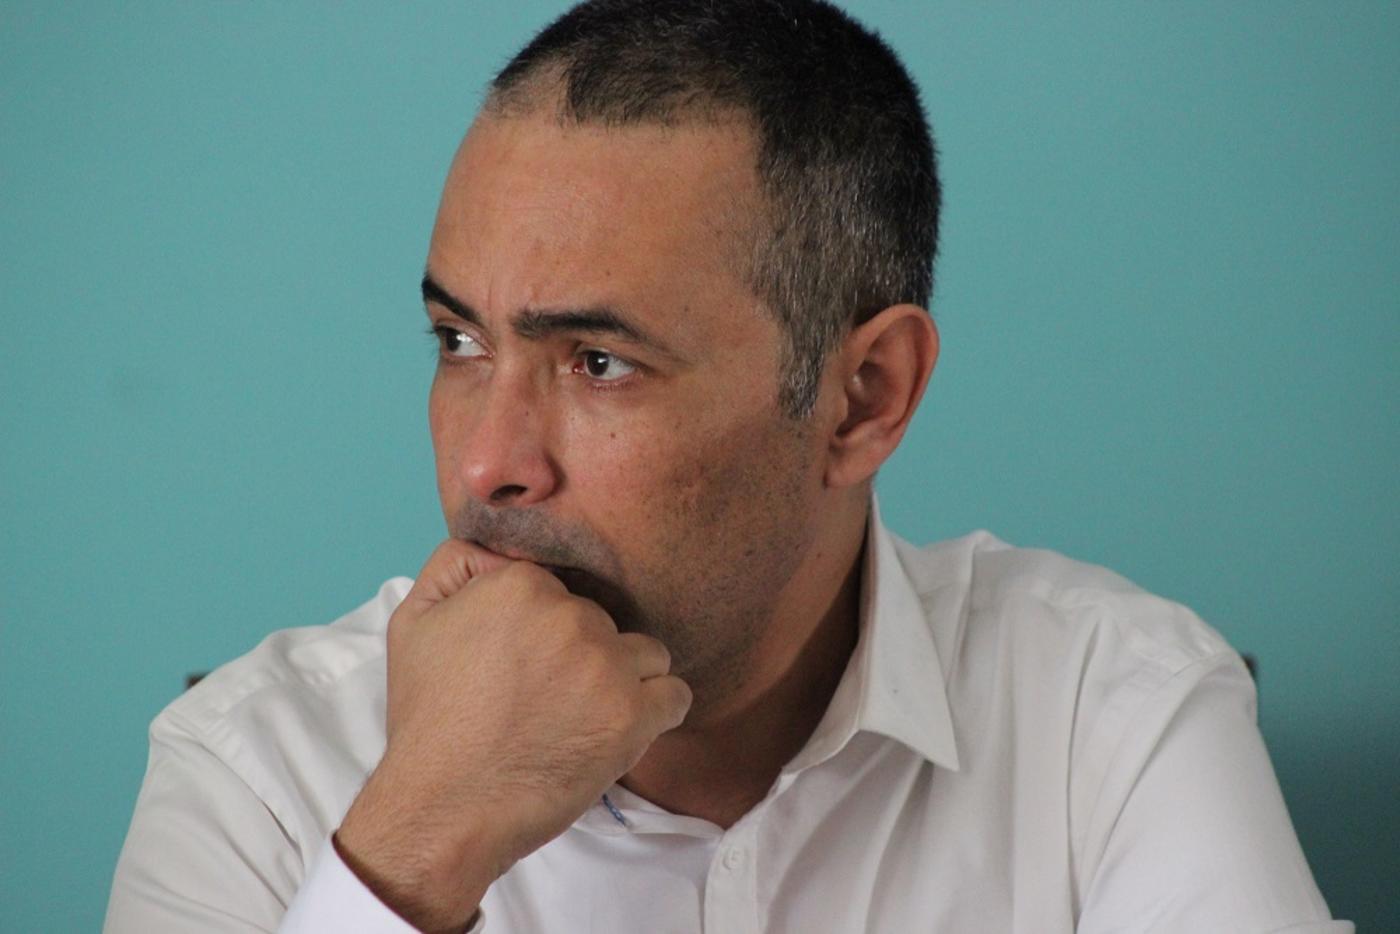 Le cas Kamel Daoud, contre-enquête | Middle East Eye édition française